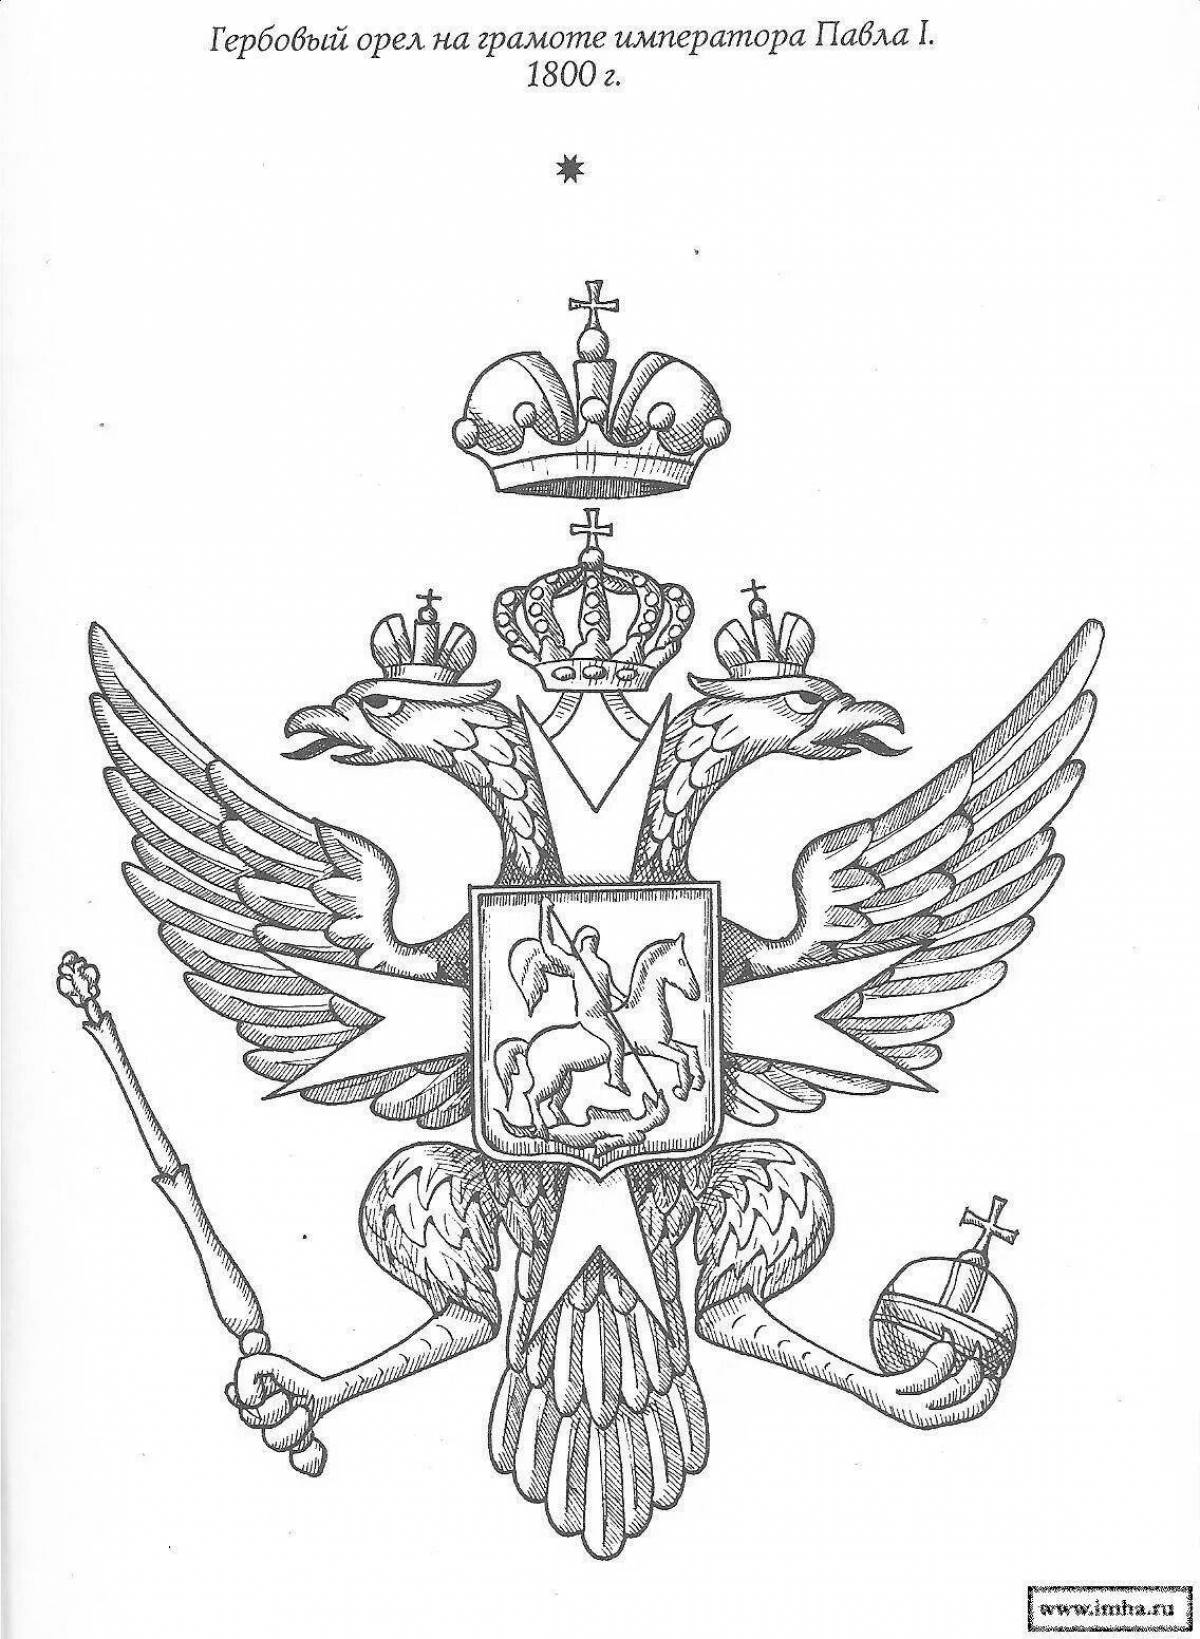 Грандилостный раскраска герб российской империи